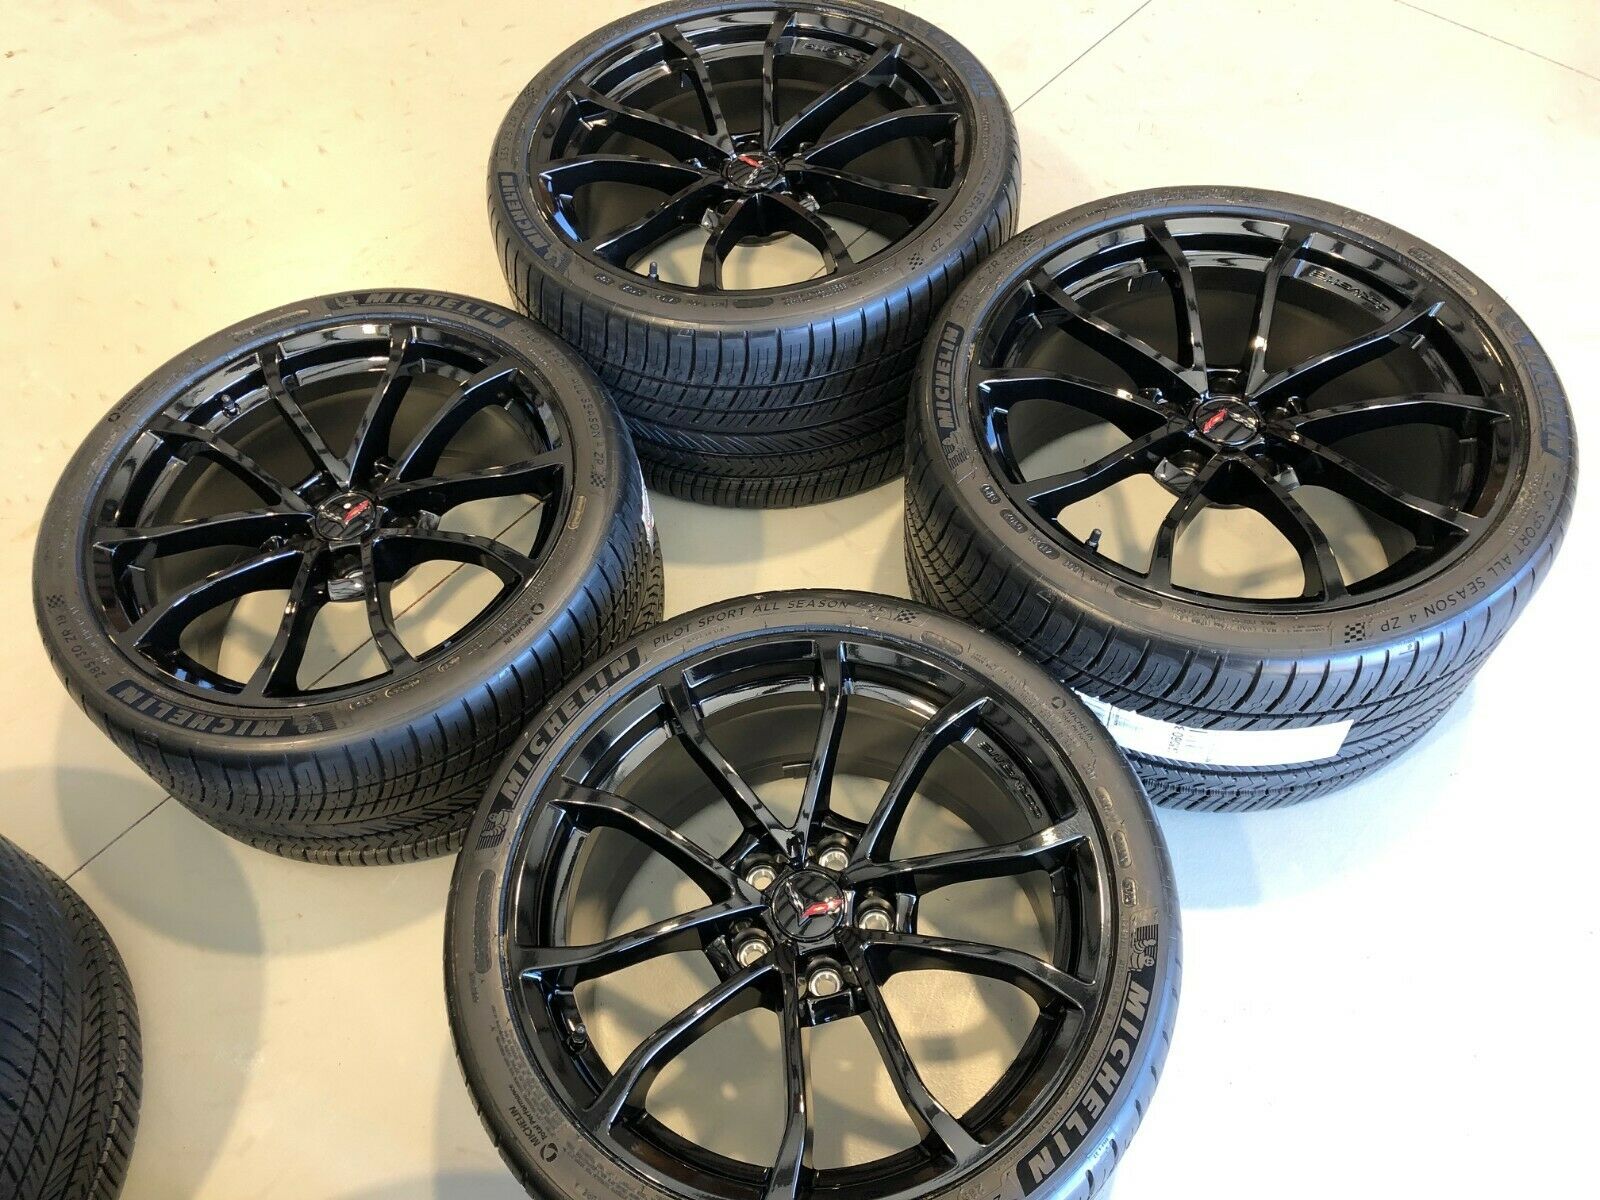 https://www.corvettegarage.com/wp-content/uploads/c7-gm-grand-sport-wheel-tire-package_gloss-black_03.jpg